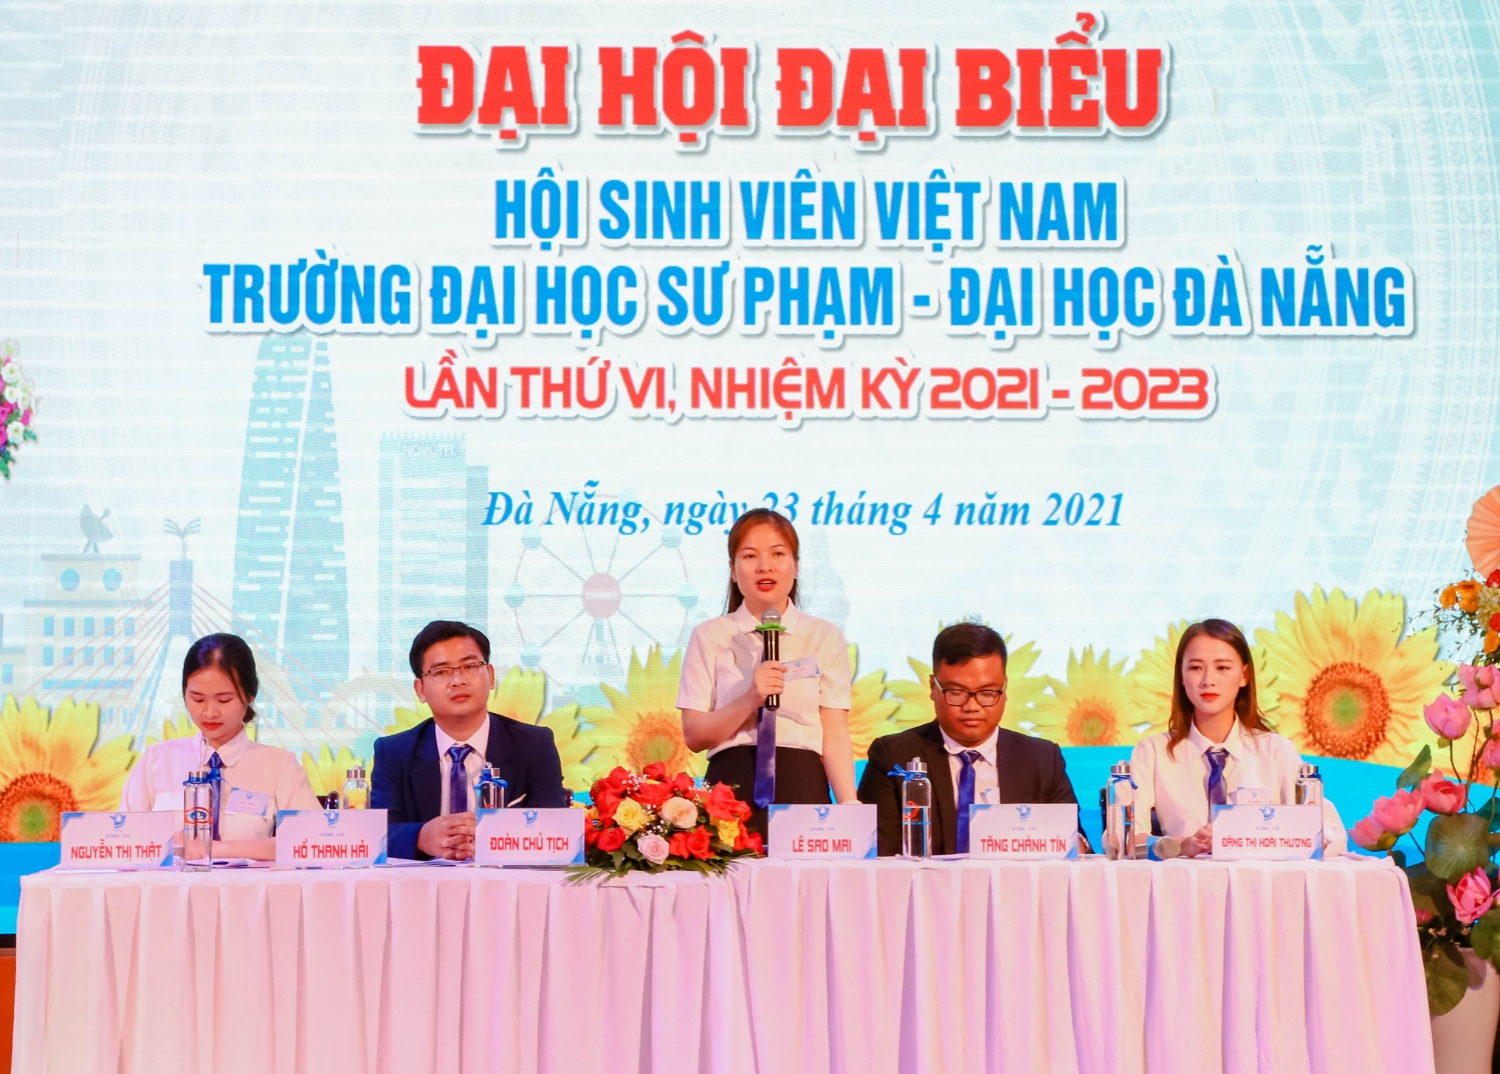 Đại hội Đại biểu Hội Sinh viên Việt Nam lần thứ VI, nhiệm kỳ 2021 – 2023